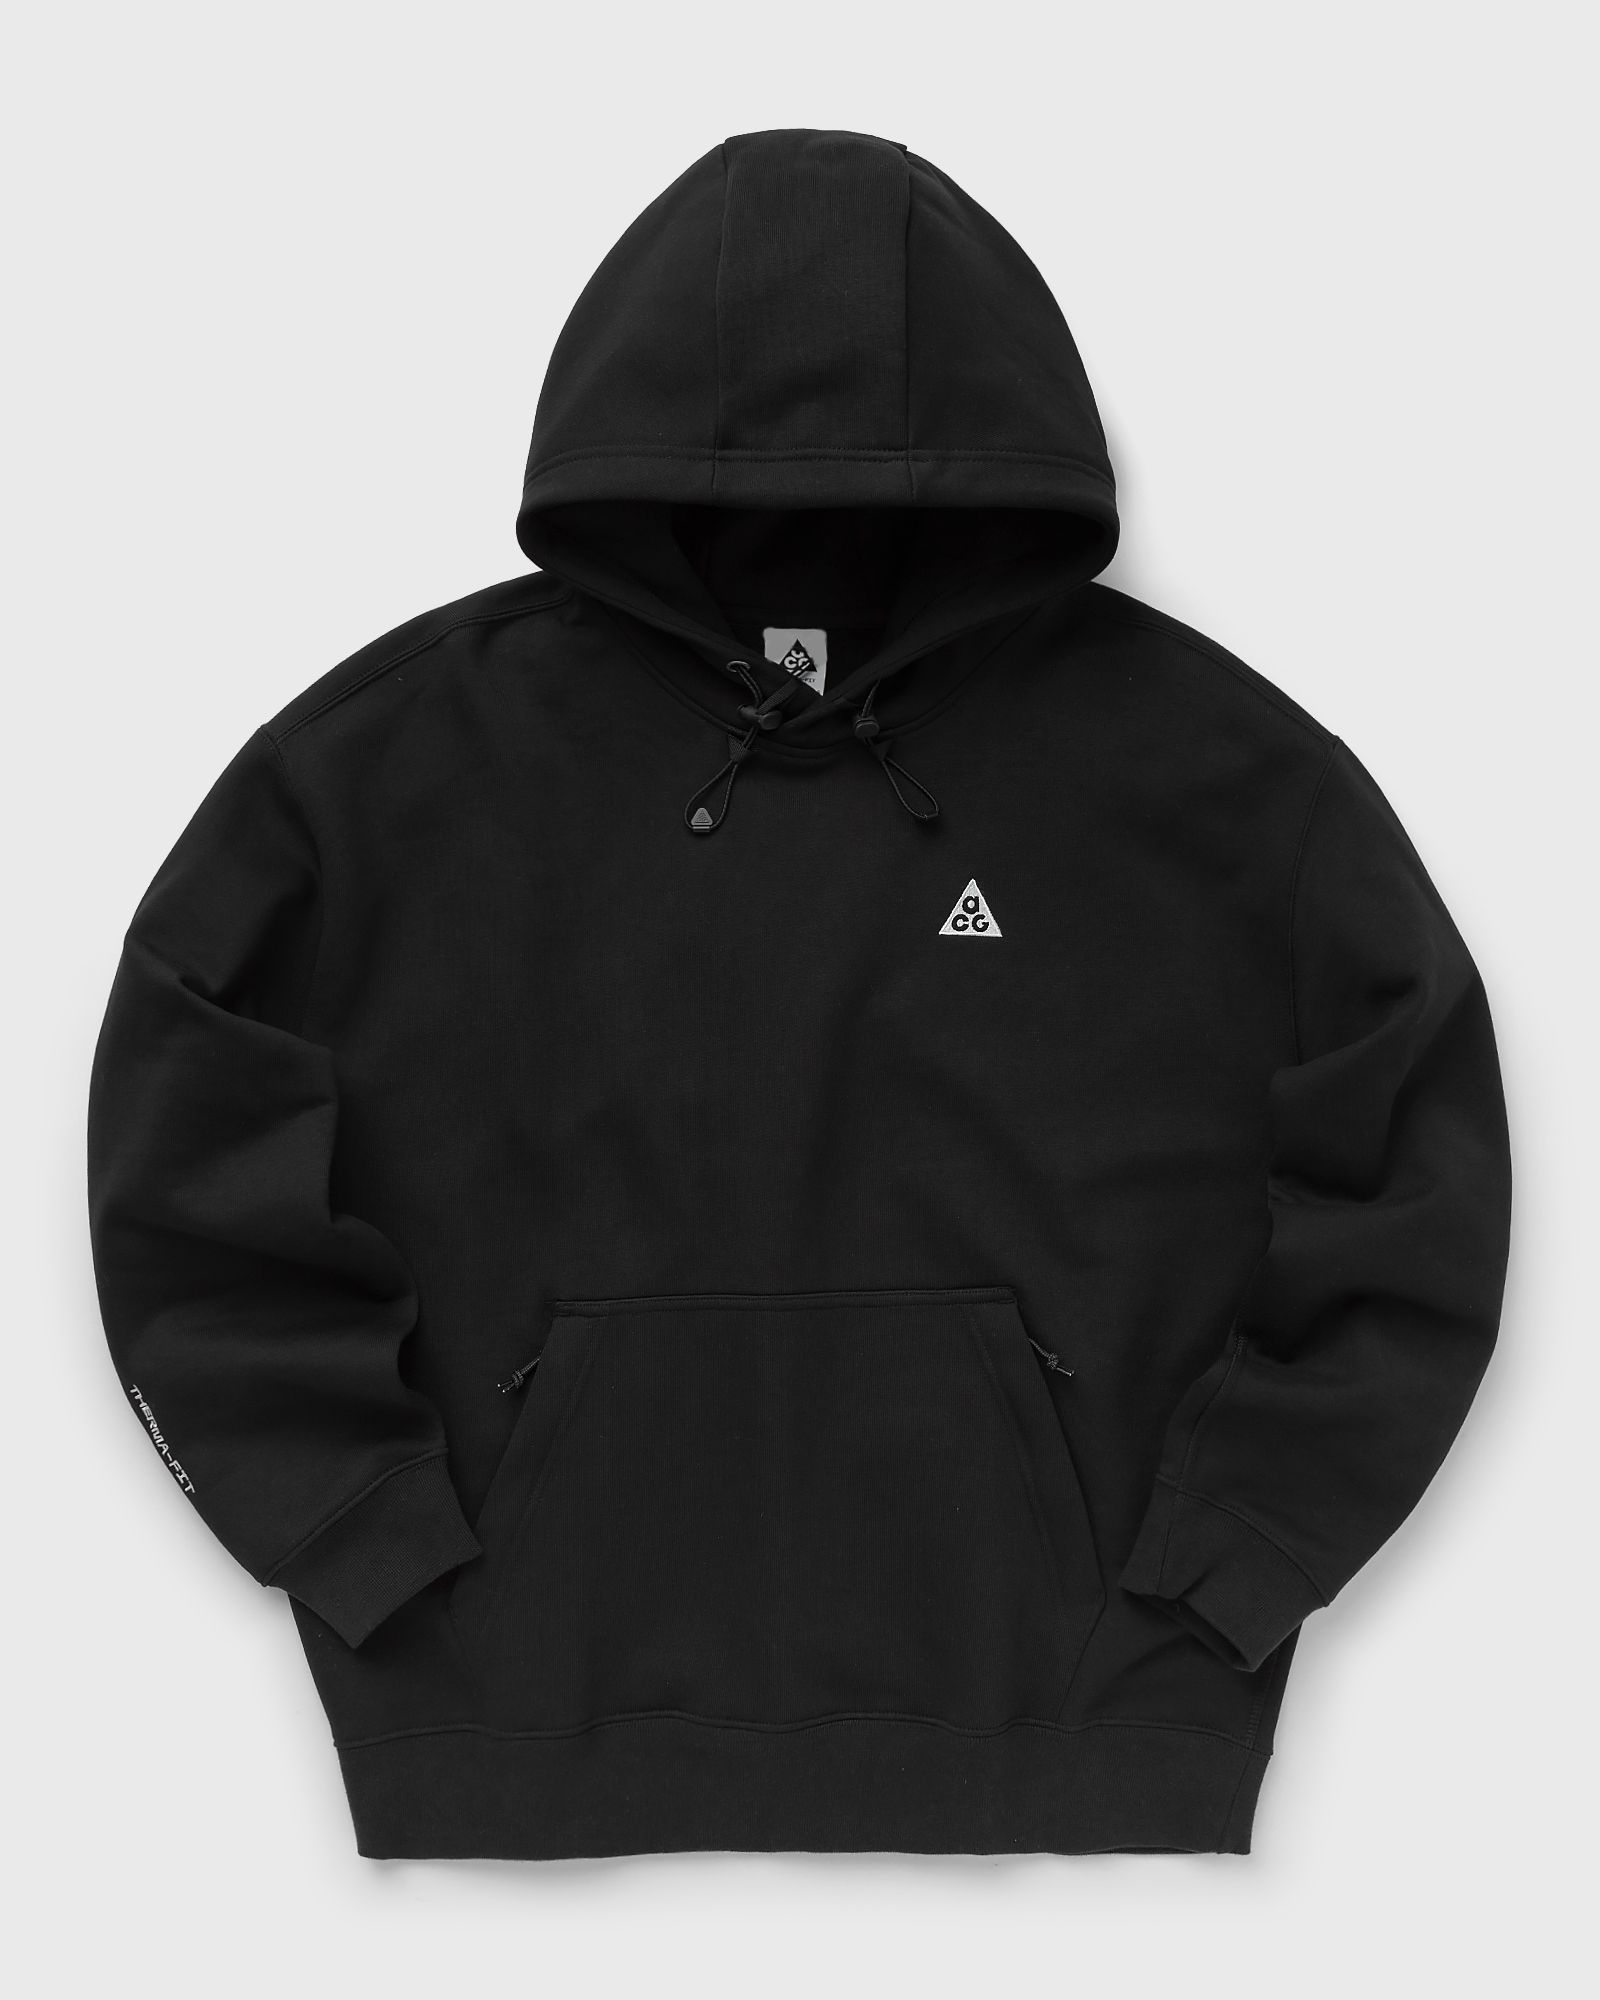 Nike - acg therma-fit fleece pullover hoodie men hoodies black in größe:m